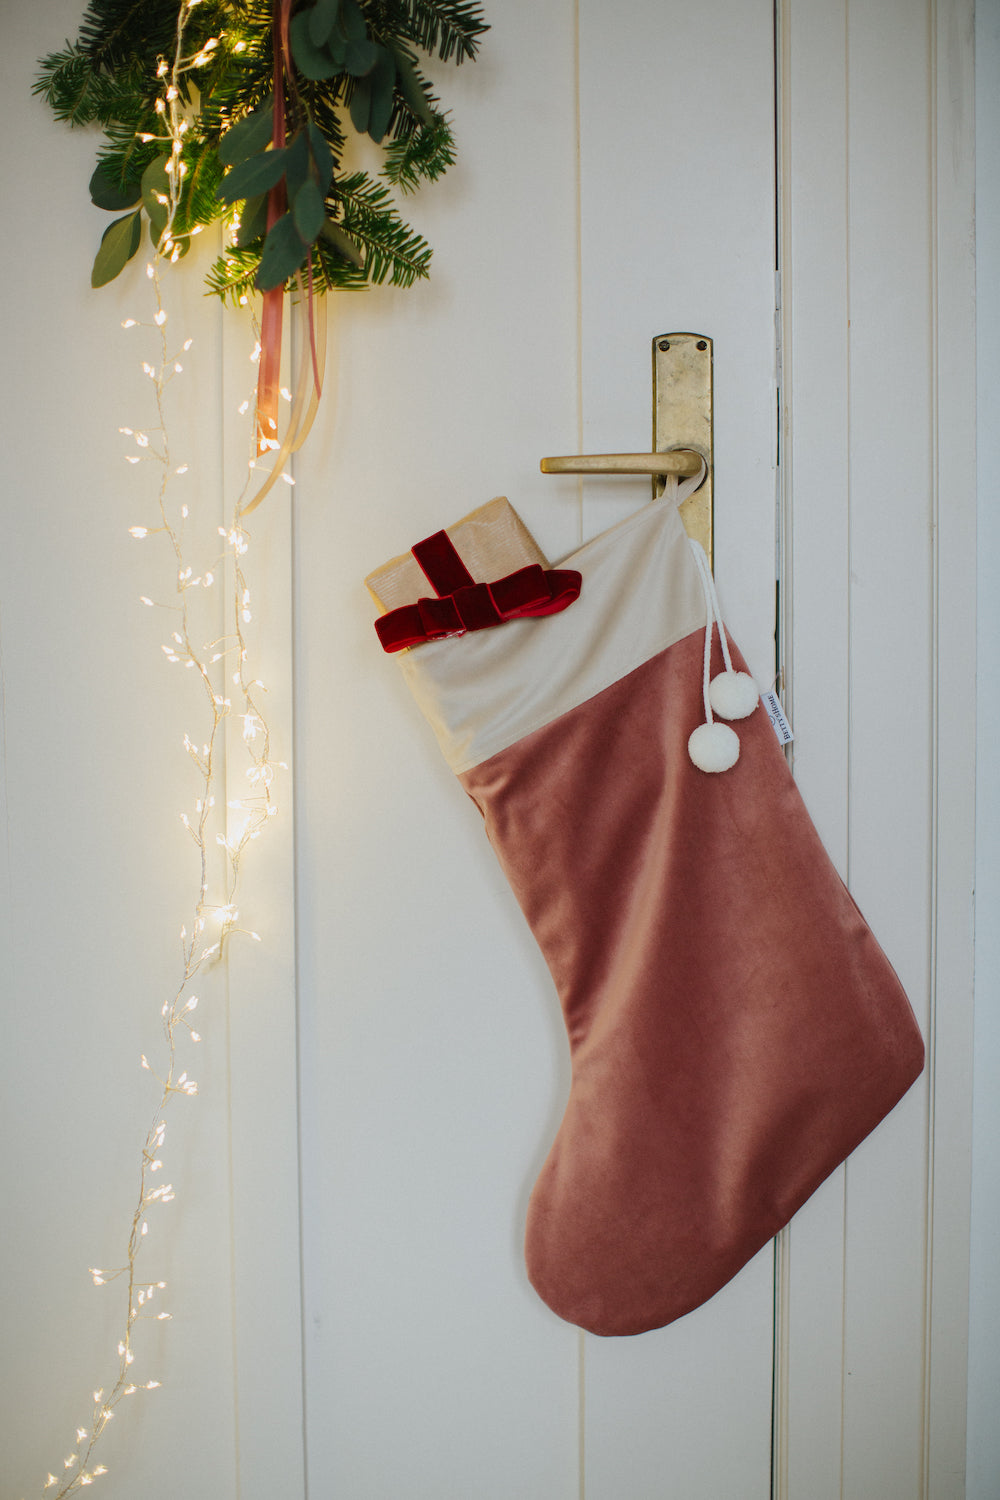 Świąteczna skarpeta na prezenty od Bettys Home wisząca na klamce od drzwi jako dekoracja świąteczna do salonu